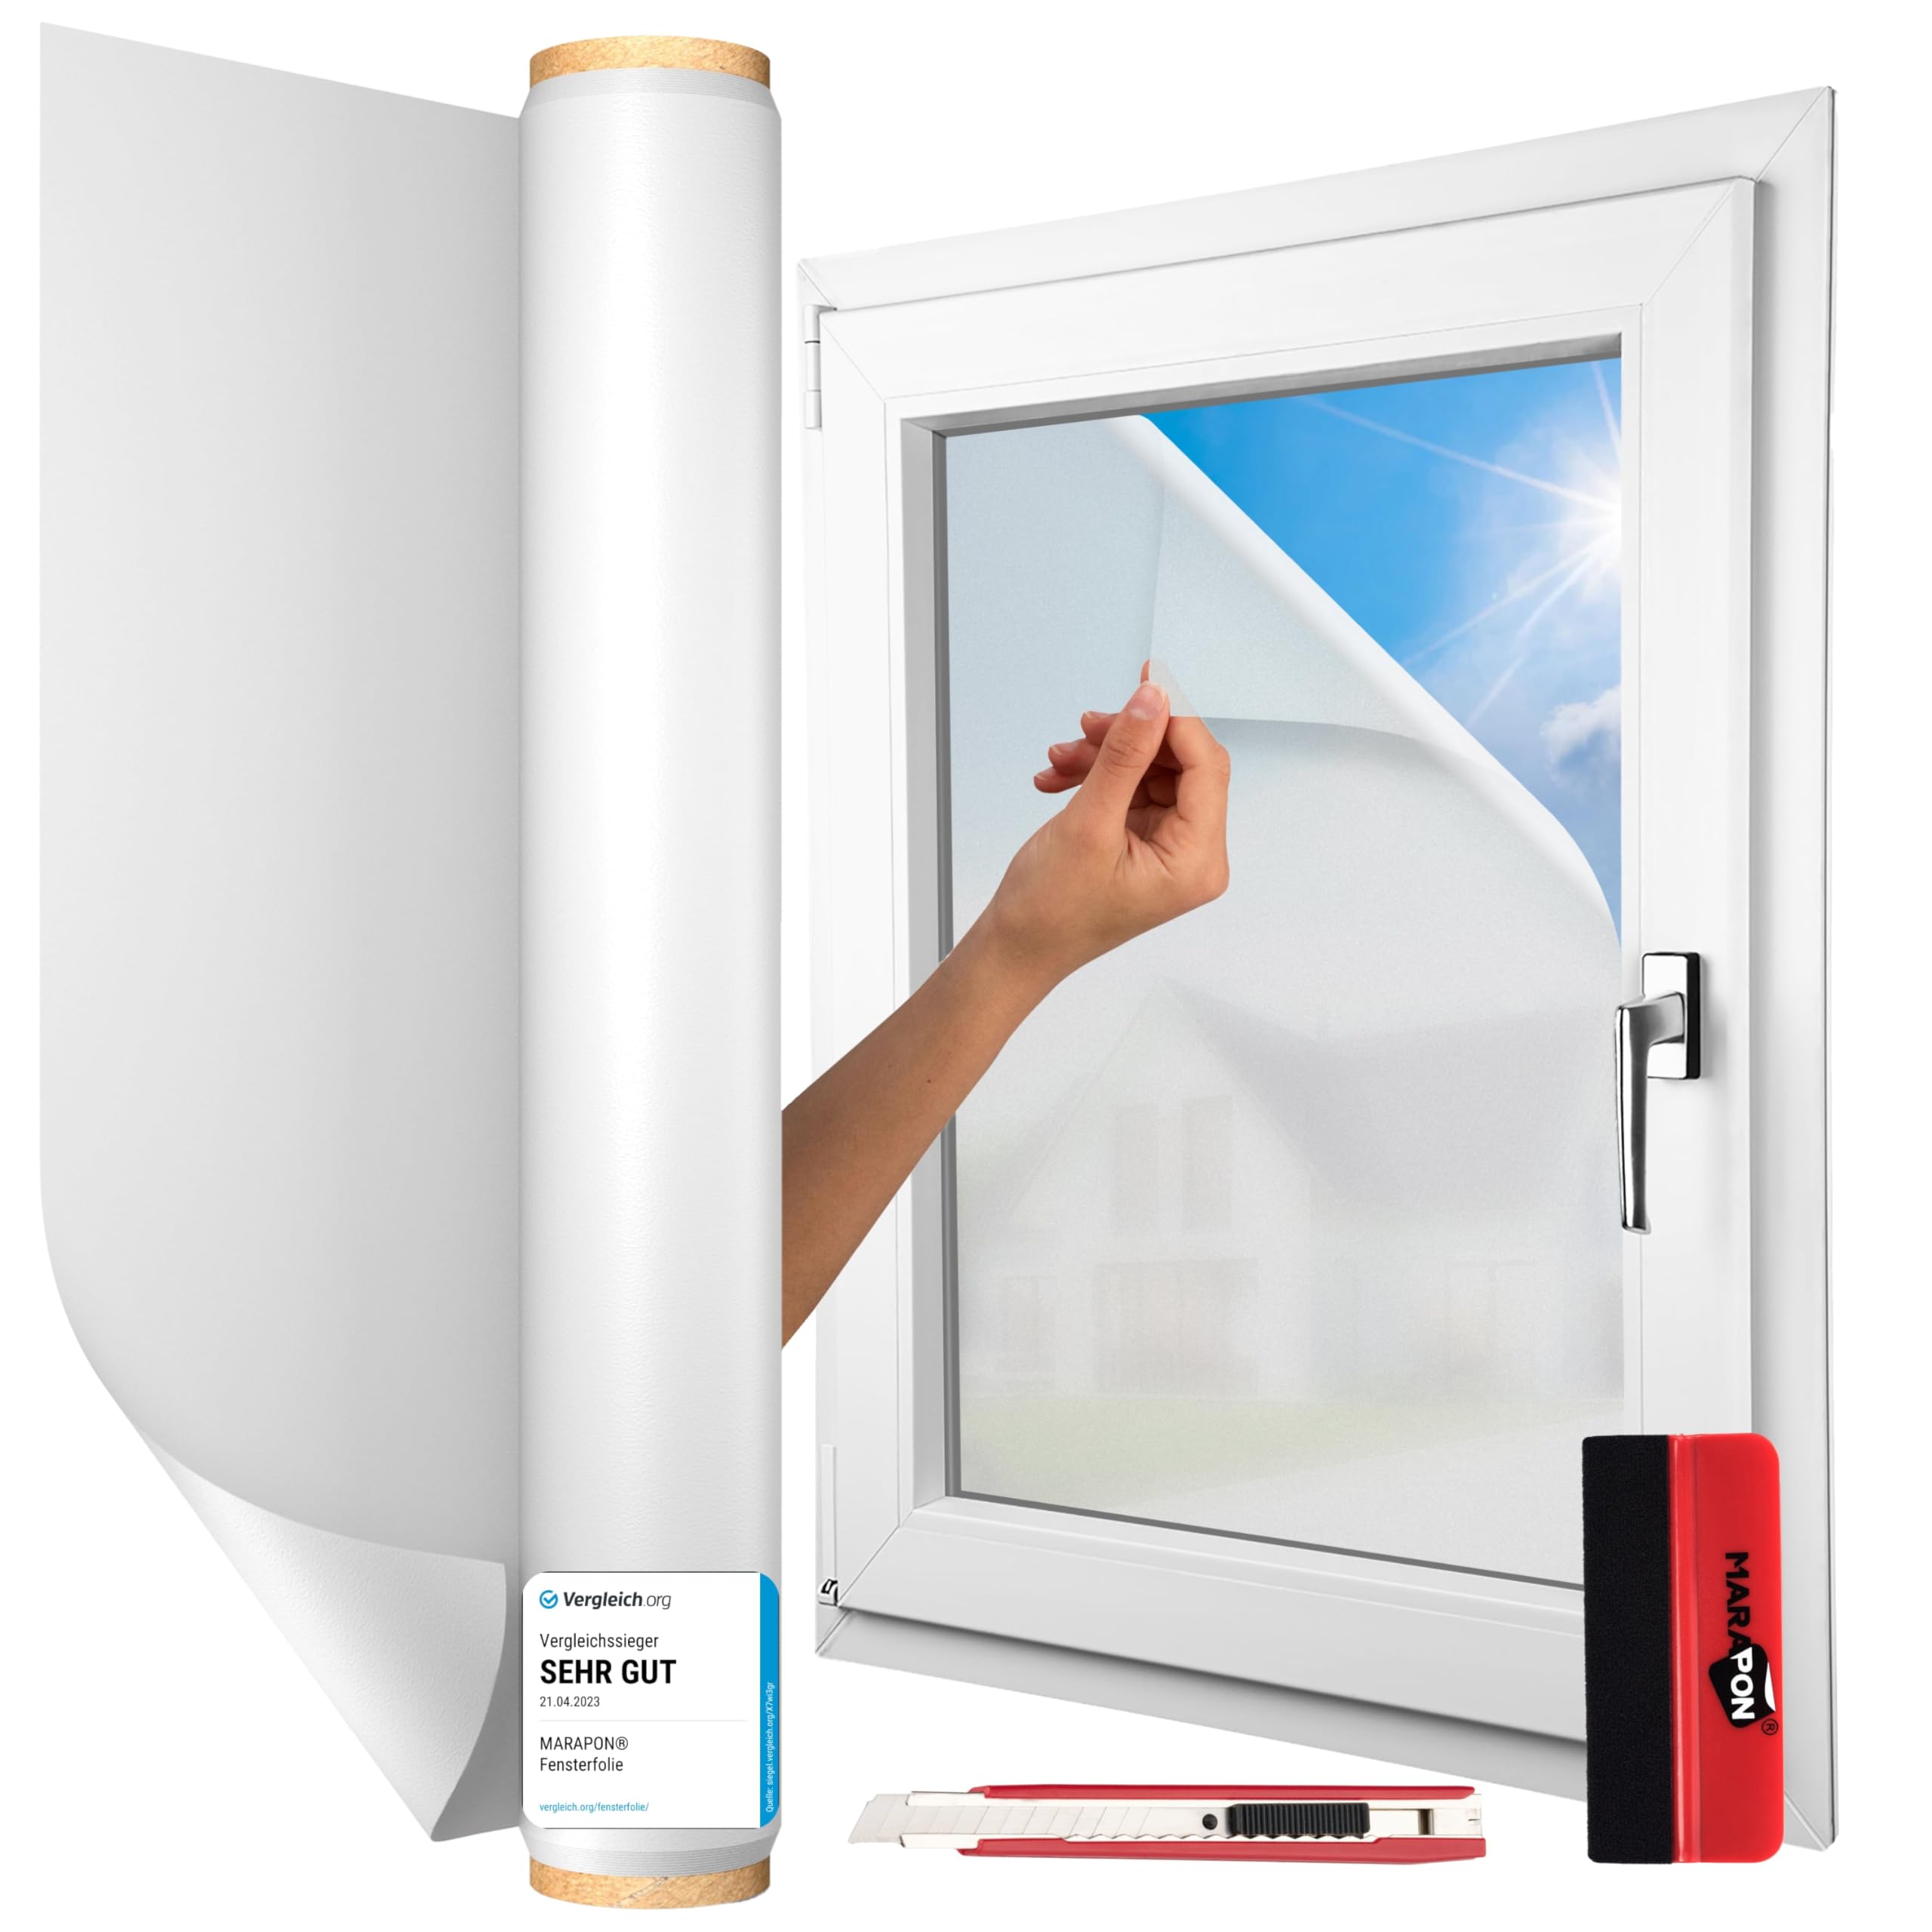 MARAPON® Fensterfolie Blickdicht selbsthaftend [60x400 cm] - inkl. Rakel und Cuttermesser - Sichtschutzfolie für Fenster - Milchglasfolie All-in-One Lösung | statisch